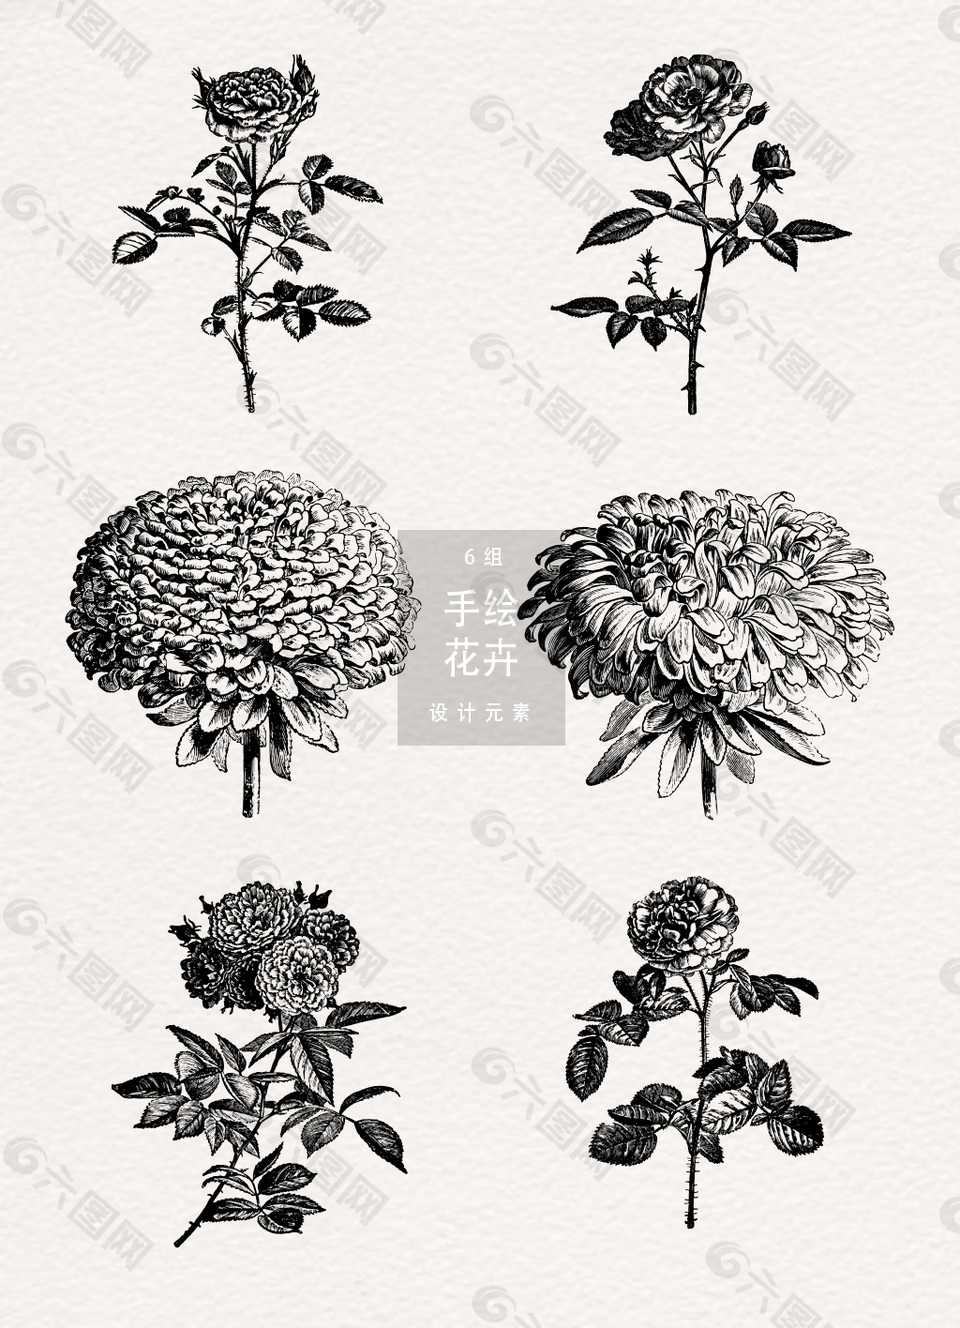 黑白手绘花朵素材